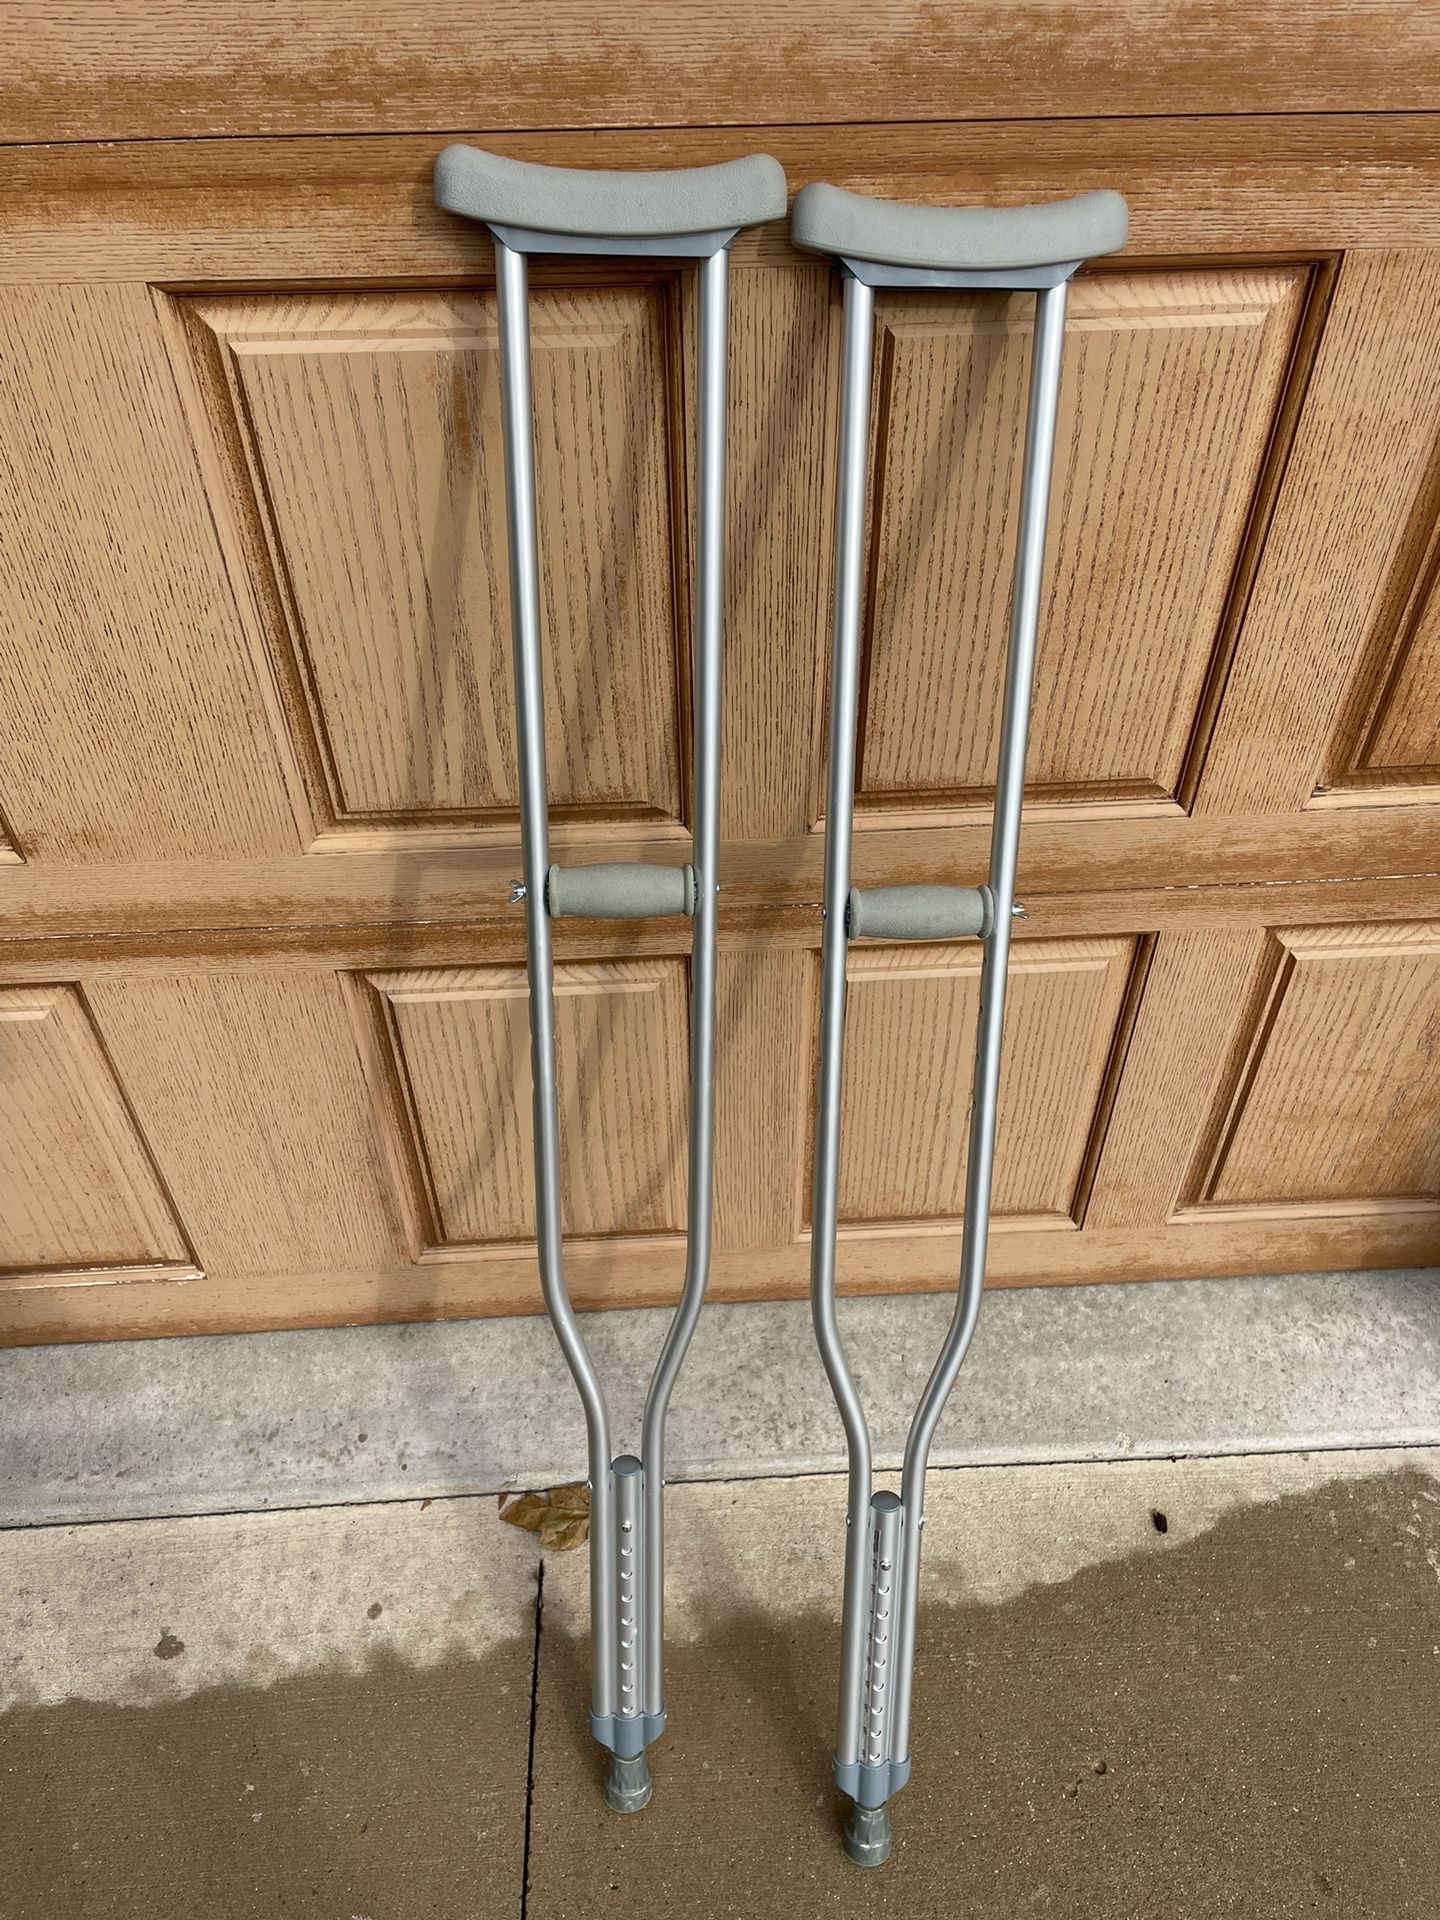 Crutches 5’10-6’6